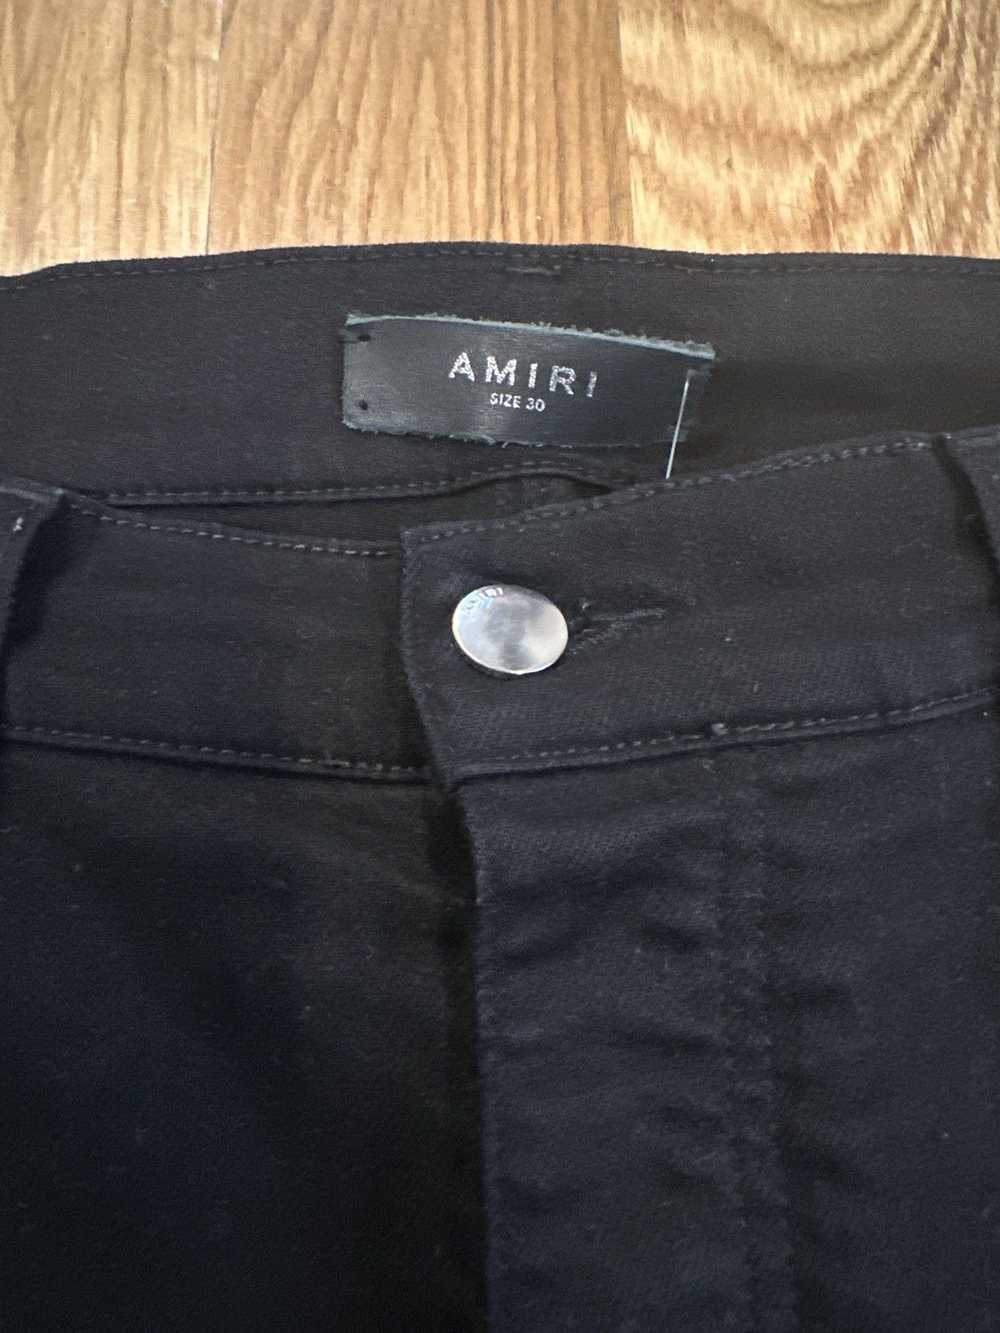 Amiri Amiri Plain Black Denim Jeans Sz 30 - image 3